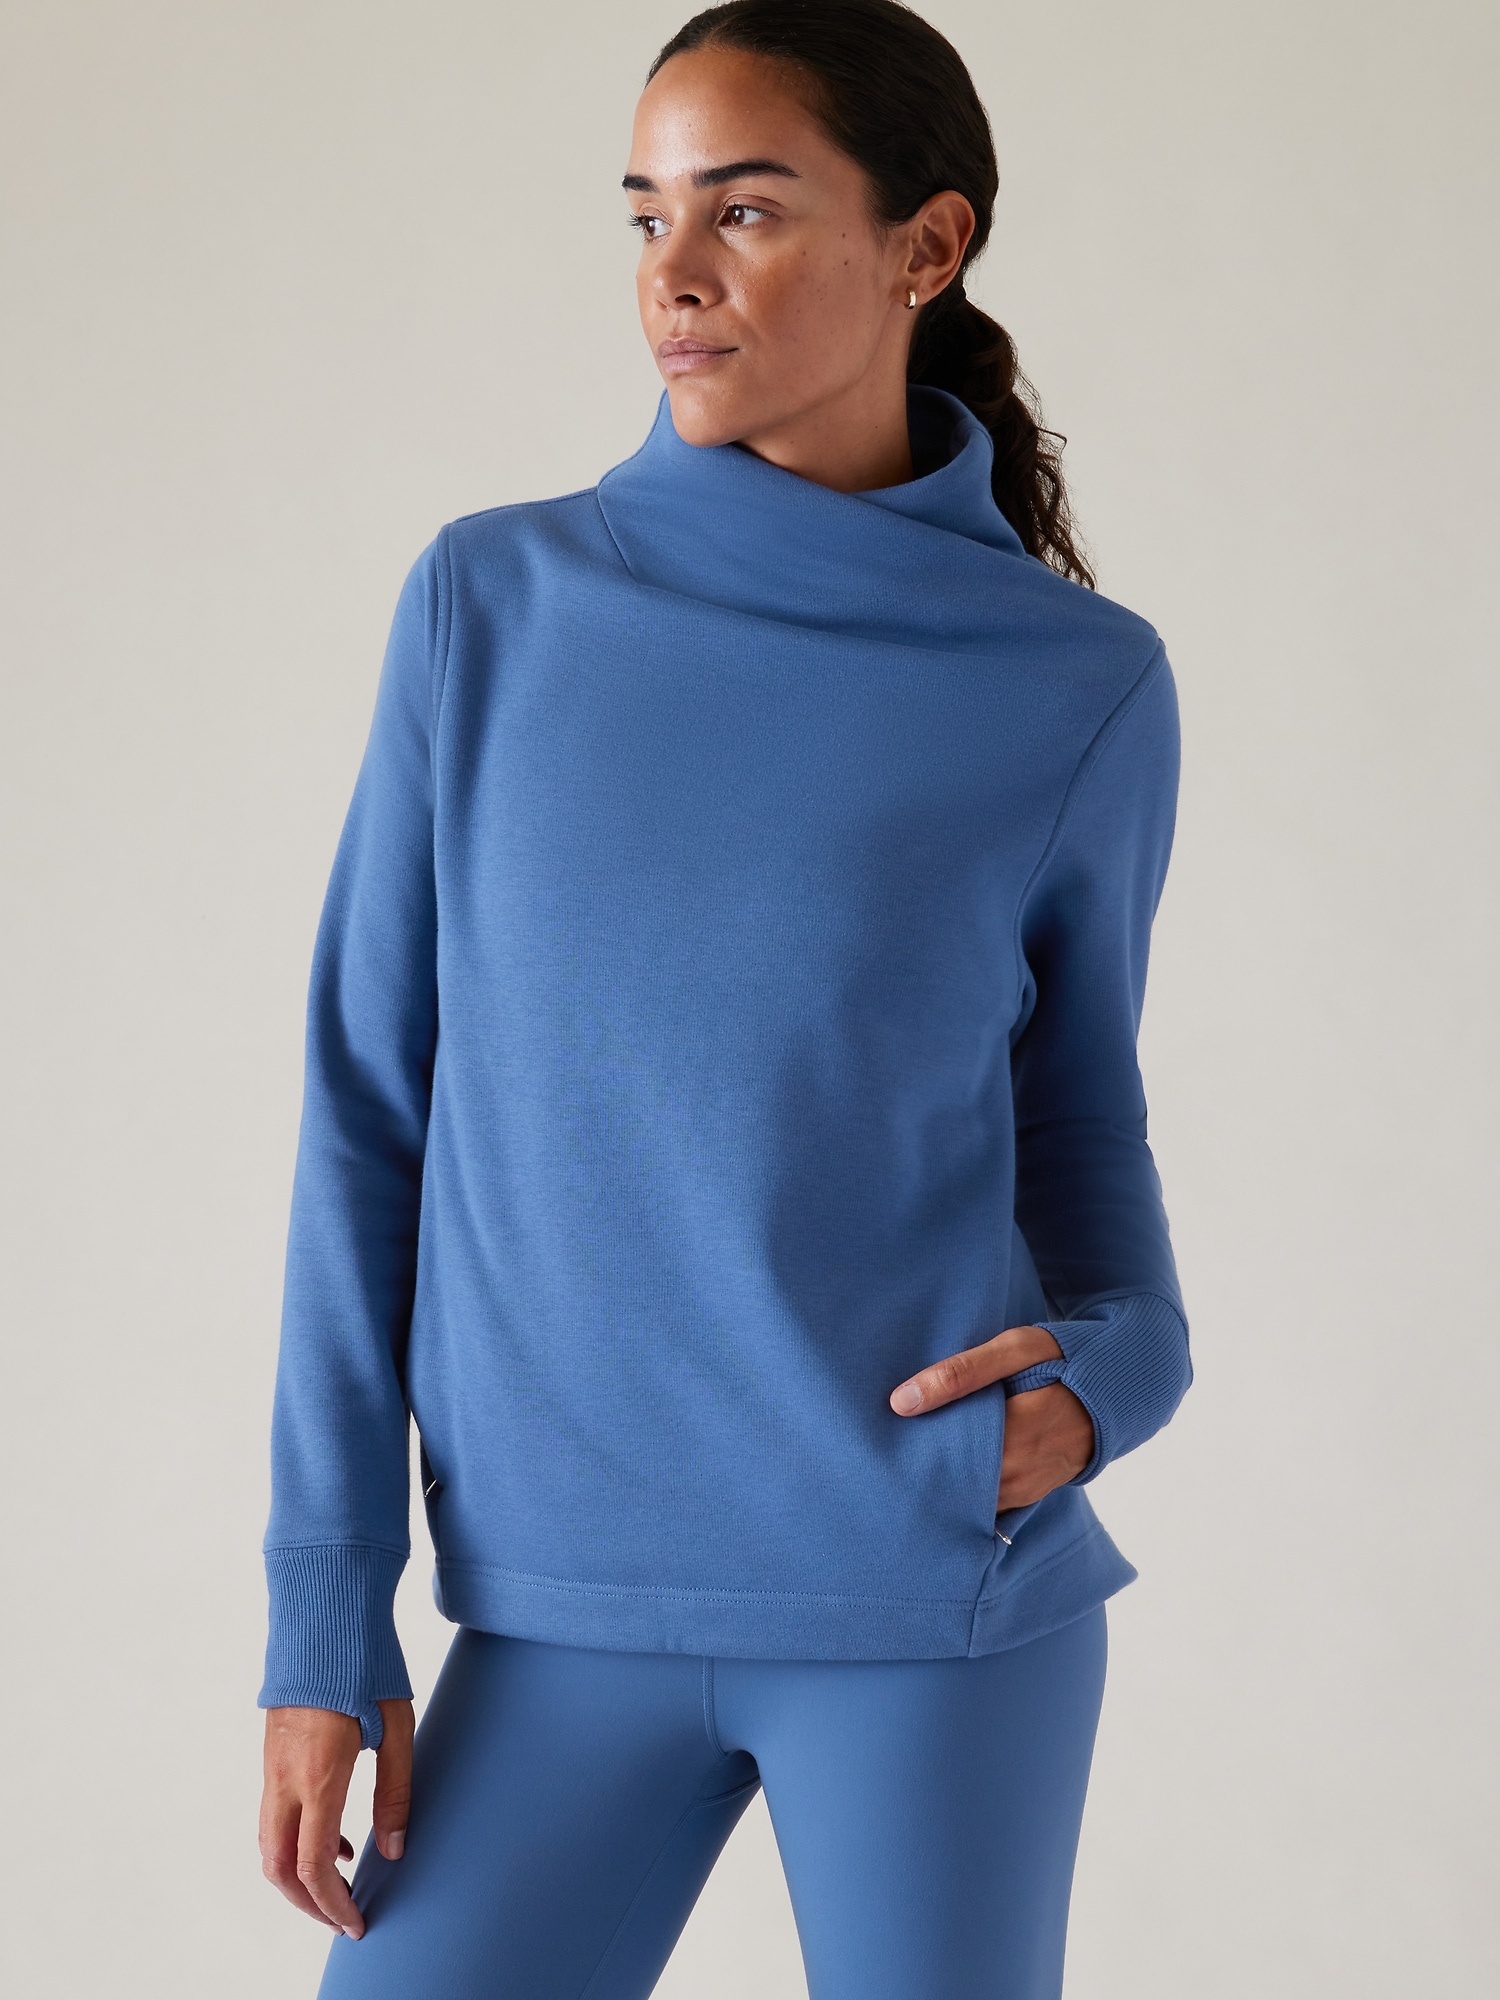 Athleta Cozy Karma Twist Neck Sweatshirt, Dark Sardina Blue, Size 2X(Plus),  NWT